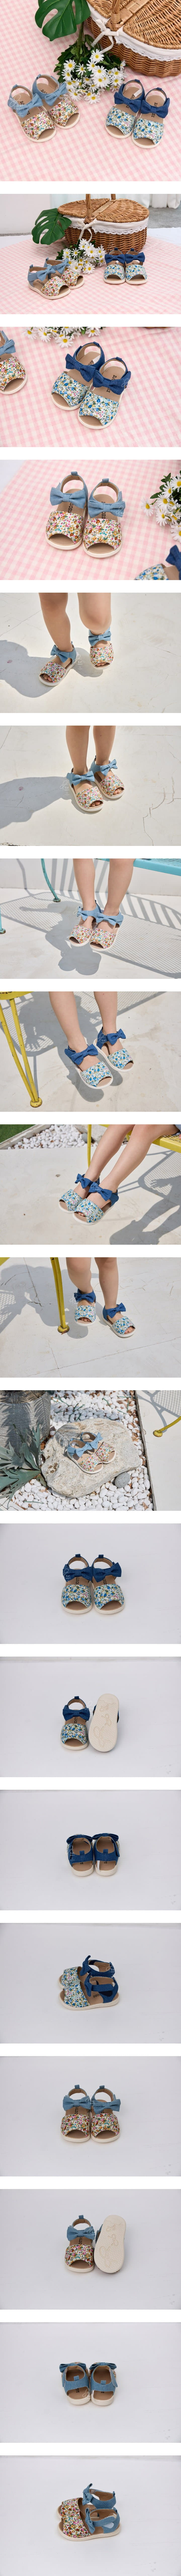 Babyzzam - Korean Children Fashion - #todddlerfashion - Y914 Sandals